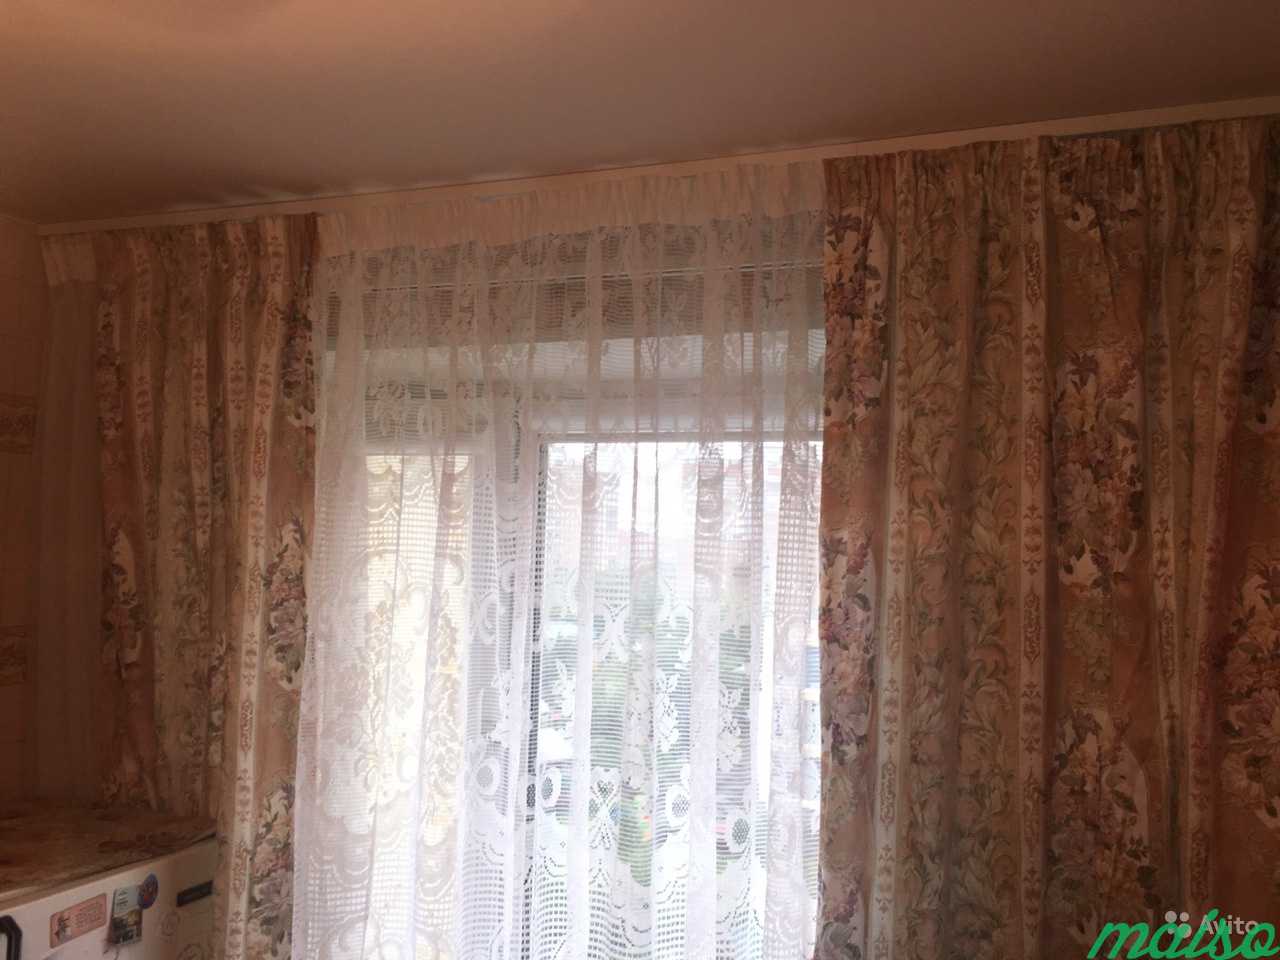 Продам штору с тюлью в Москве. Фото 2